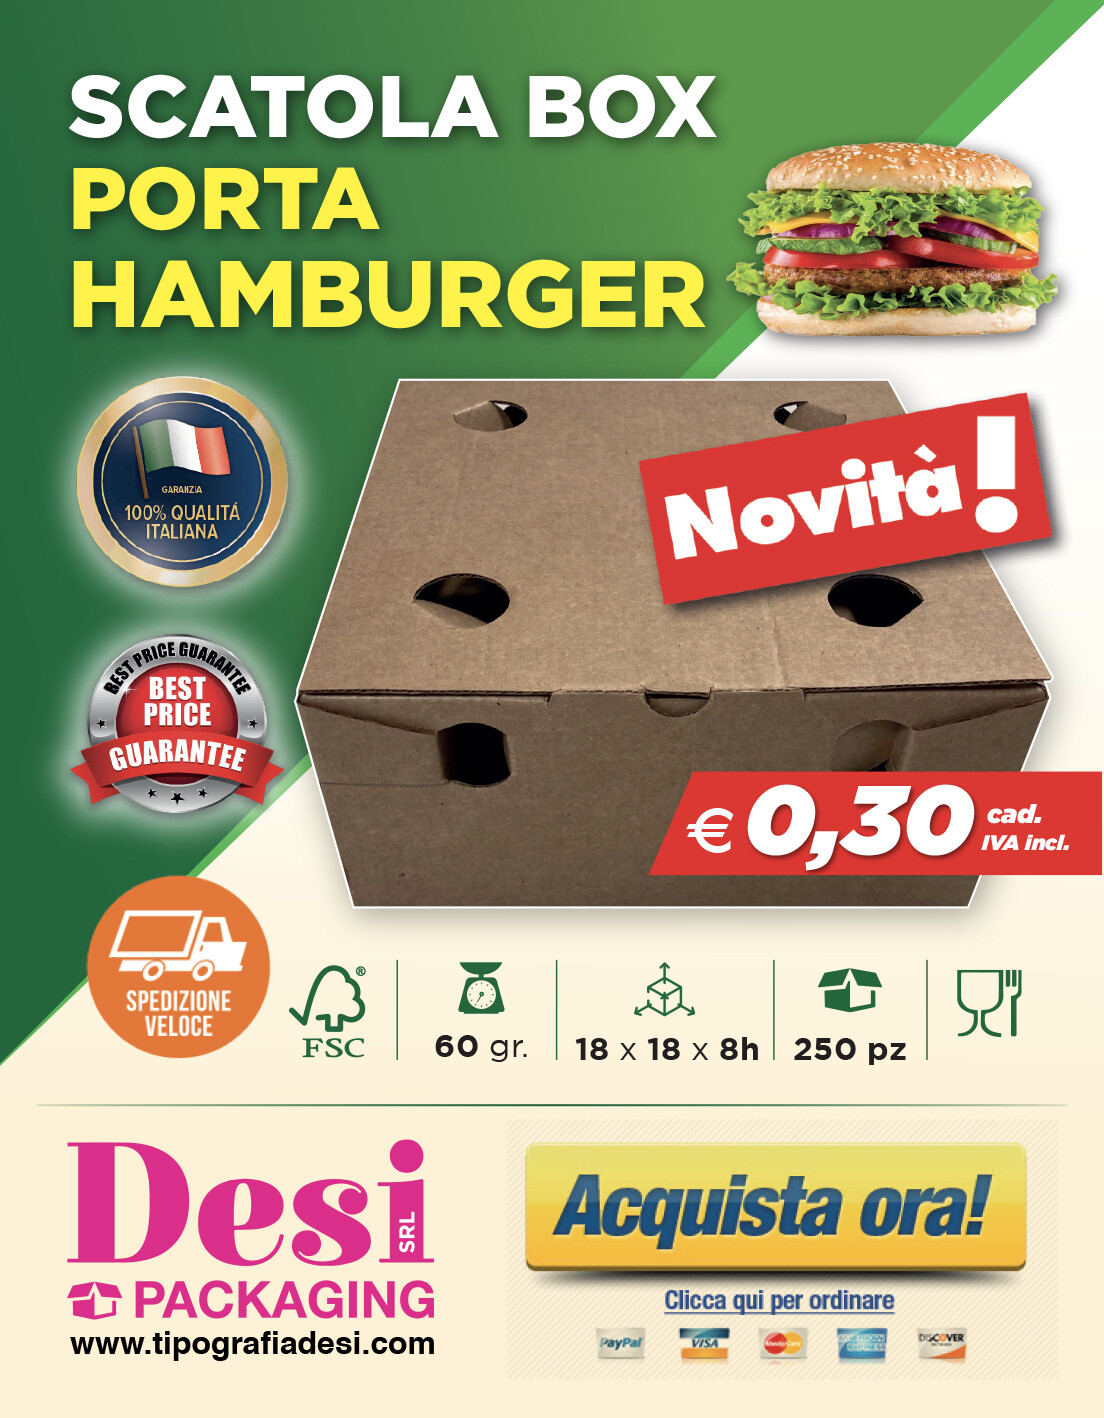 Scatola Box Porta Hamburger - Confezione da 250 pz